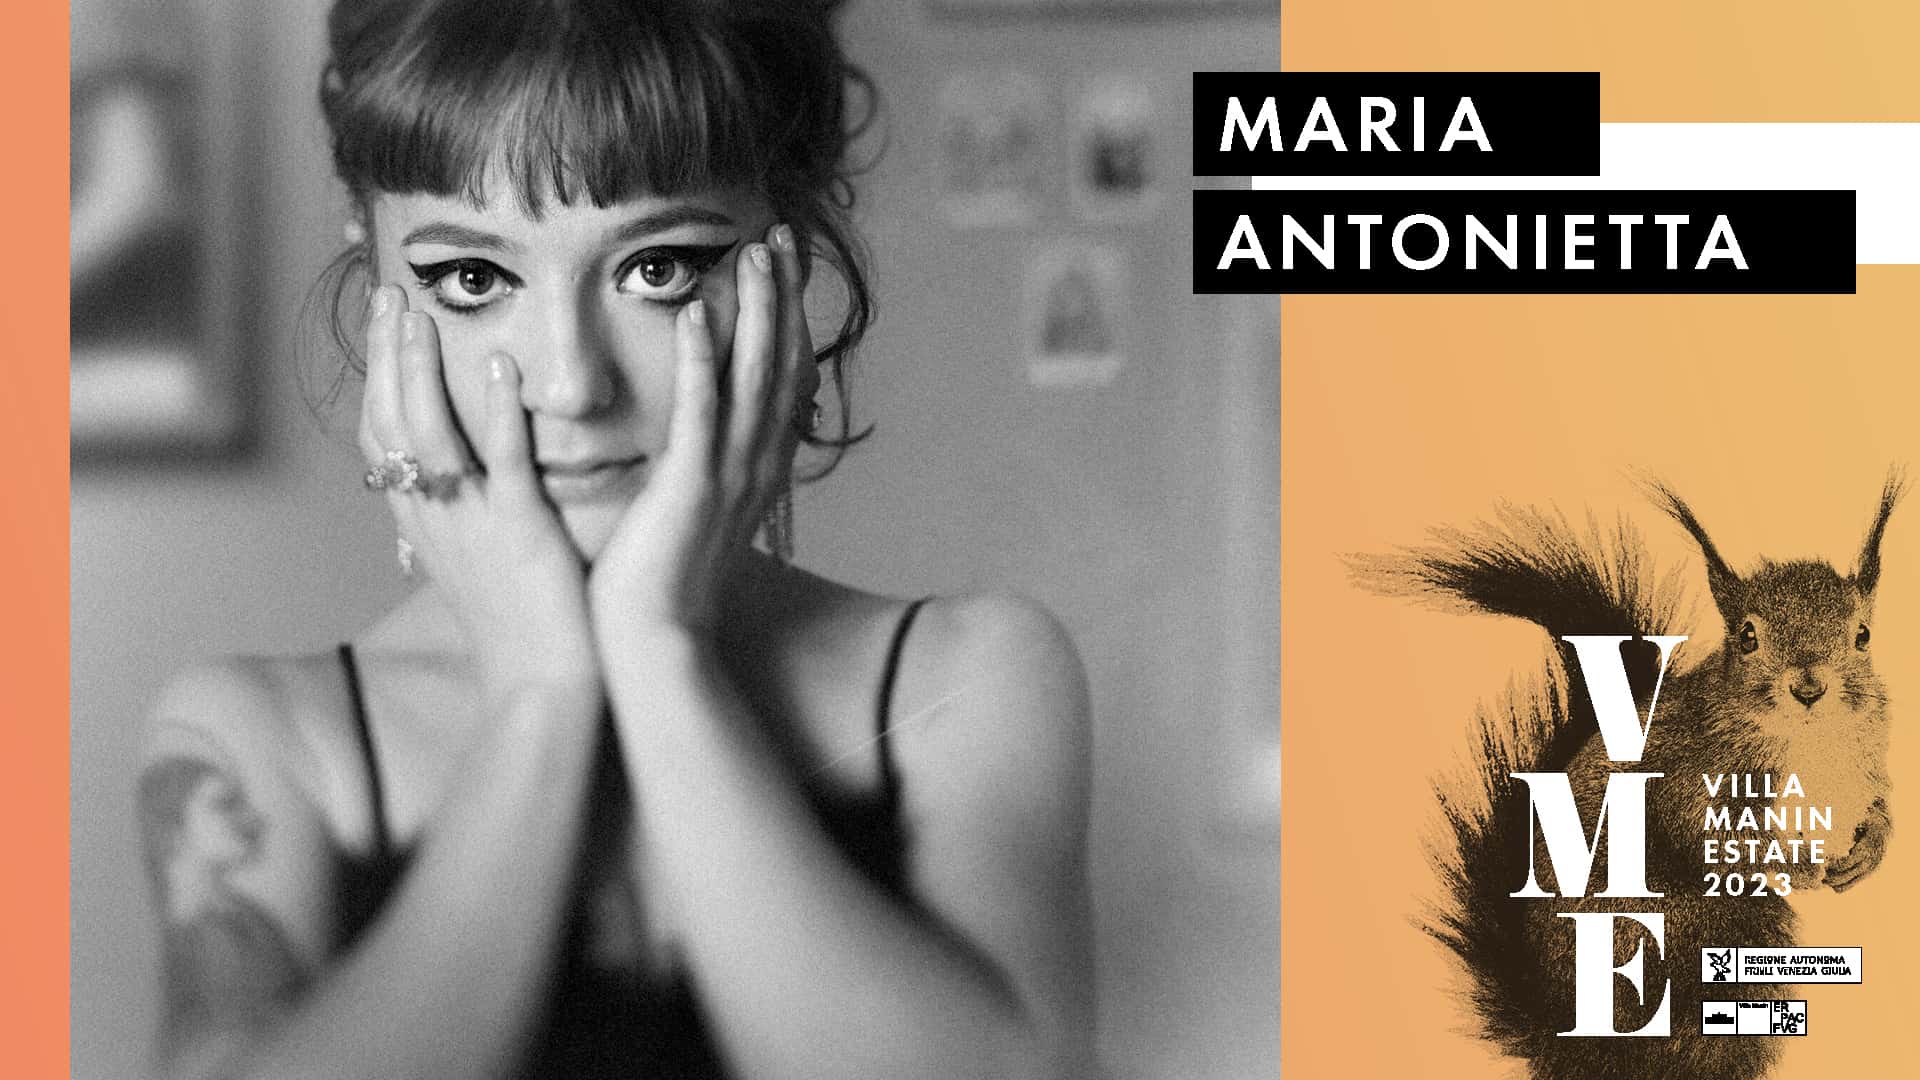 MARIA ANTONIETTA, una delle voci femminili più amate dell'alternative italiano, è il quinto nome annunciato per CONCERTI NEL PARCO